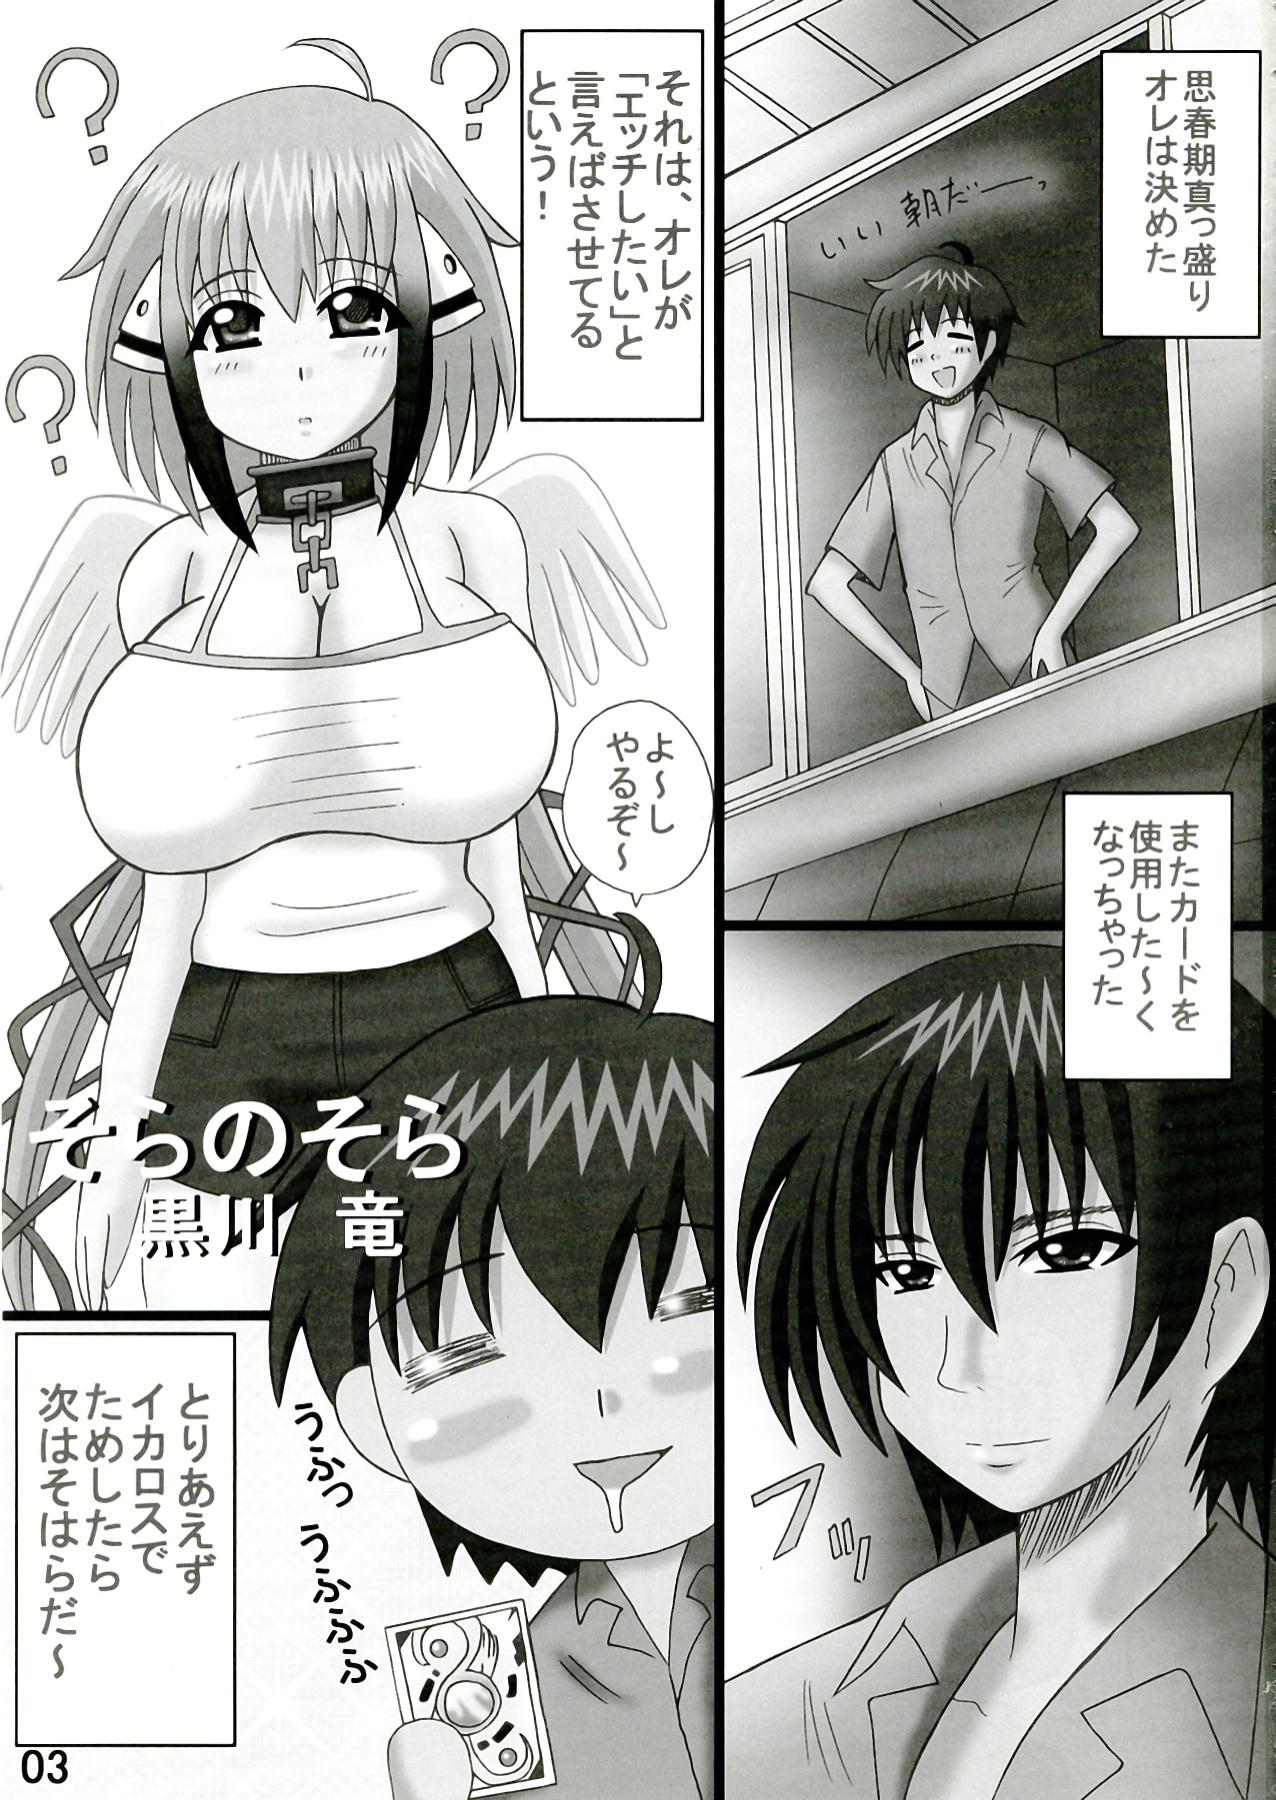 Furry Sora no Sora - Sora no otoshimono Outdoor - Page 3